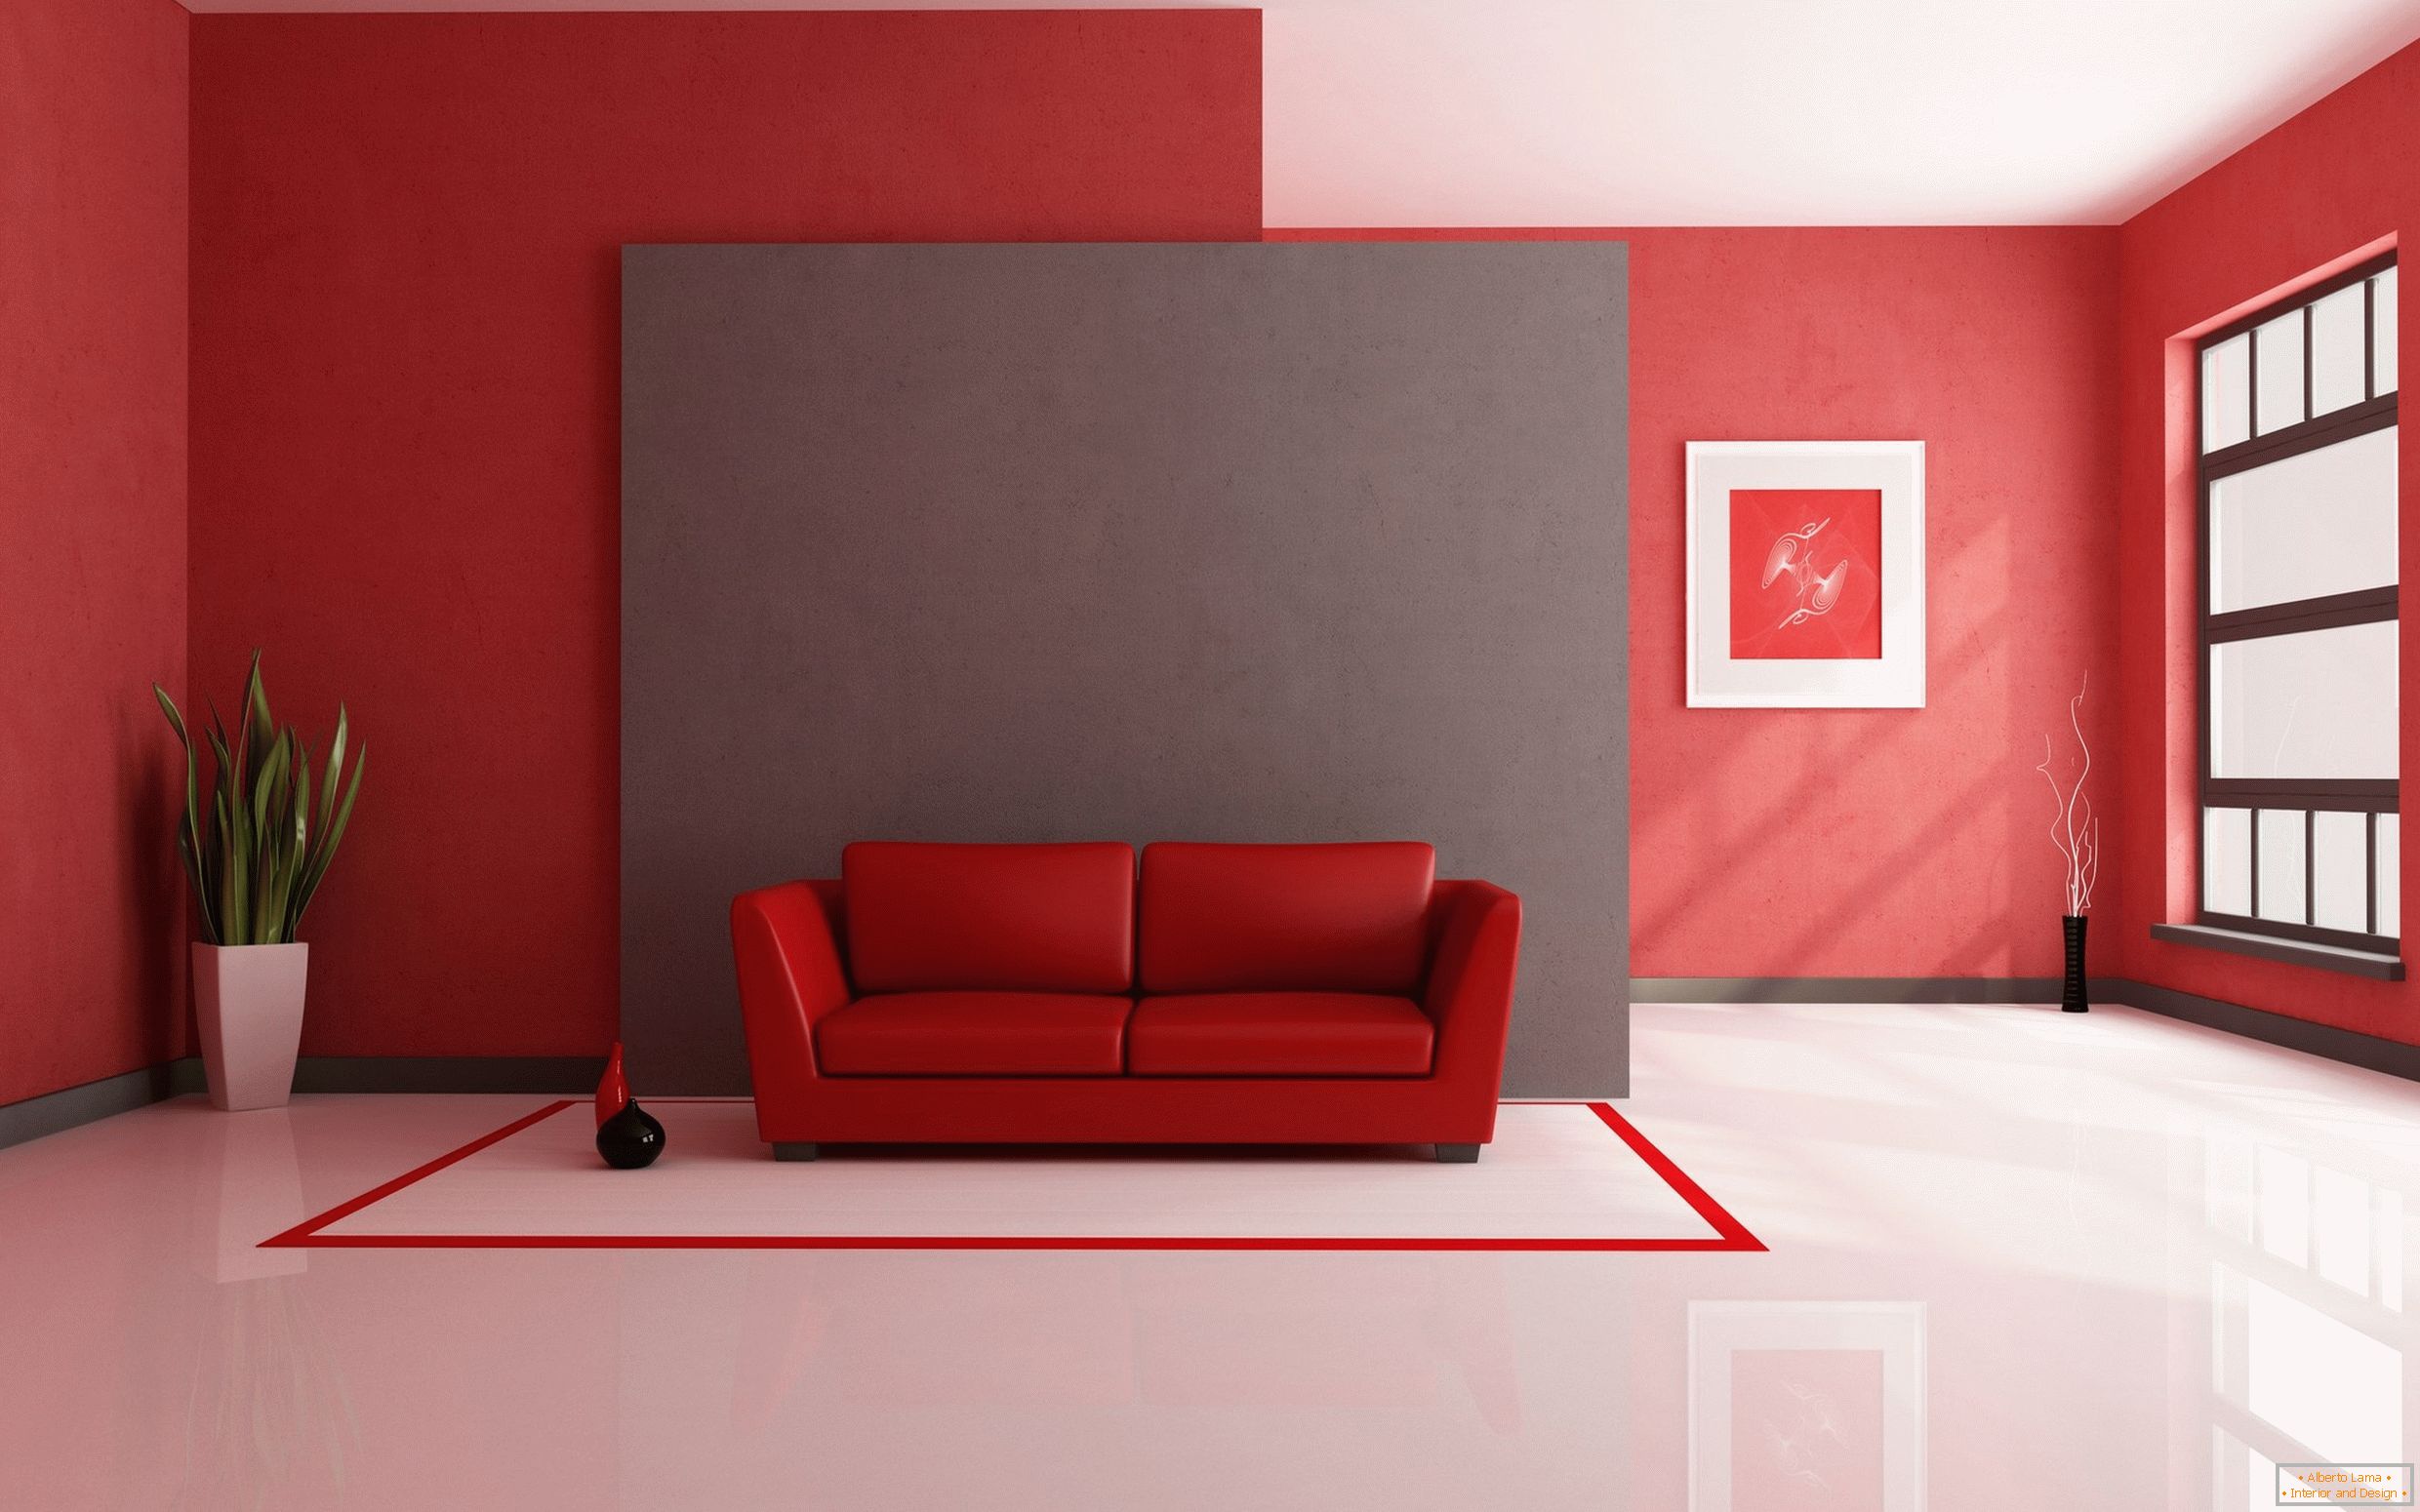 Білий підлогу в поєднанні з червоними оздоблювальними матеріалами і предметами інтер'єру